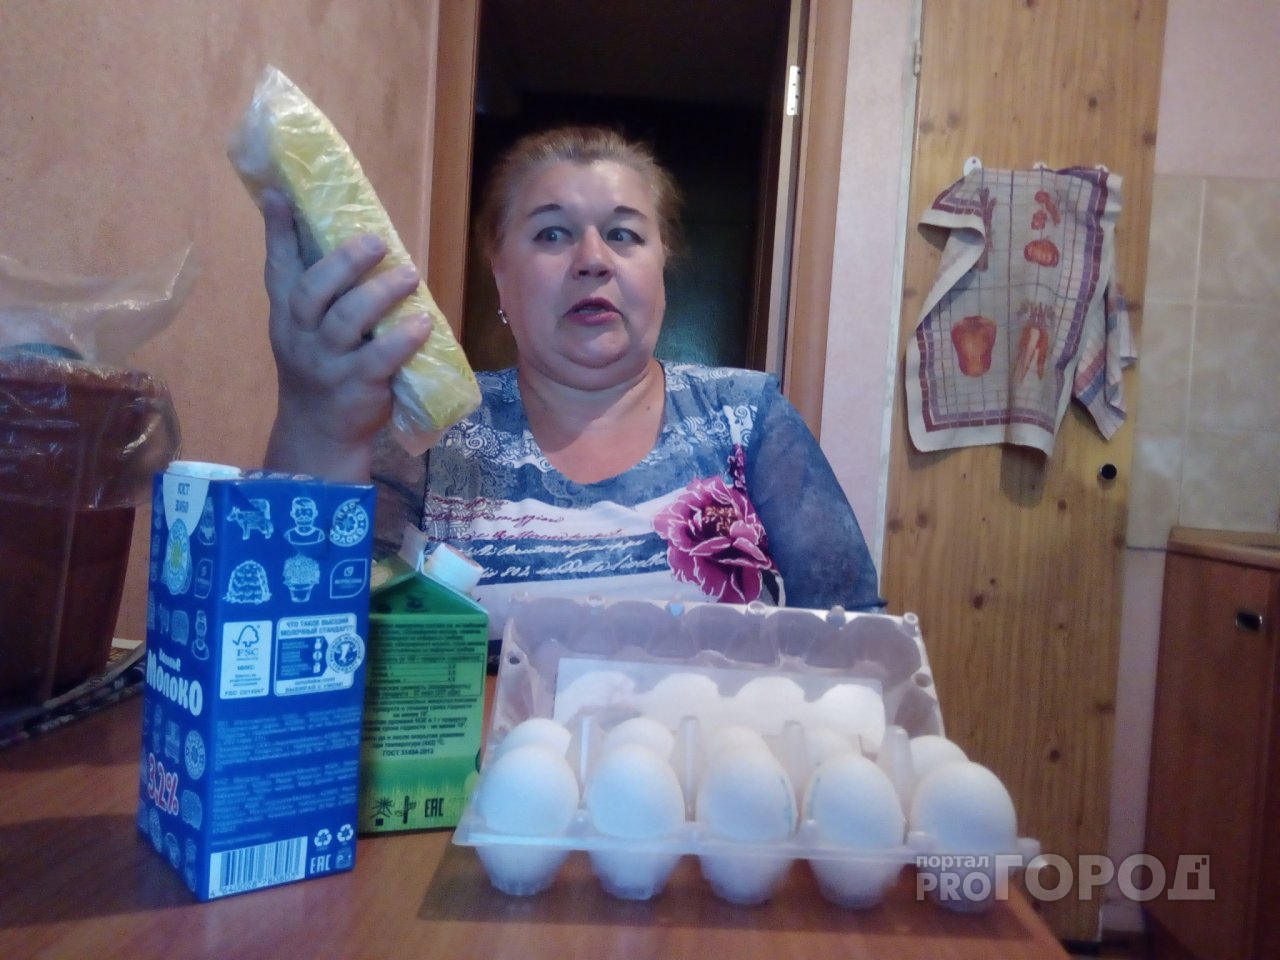 Ярославна раскрыла свой холодильник и показала, как живет на пенсию